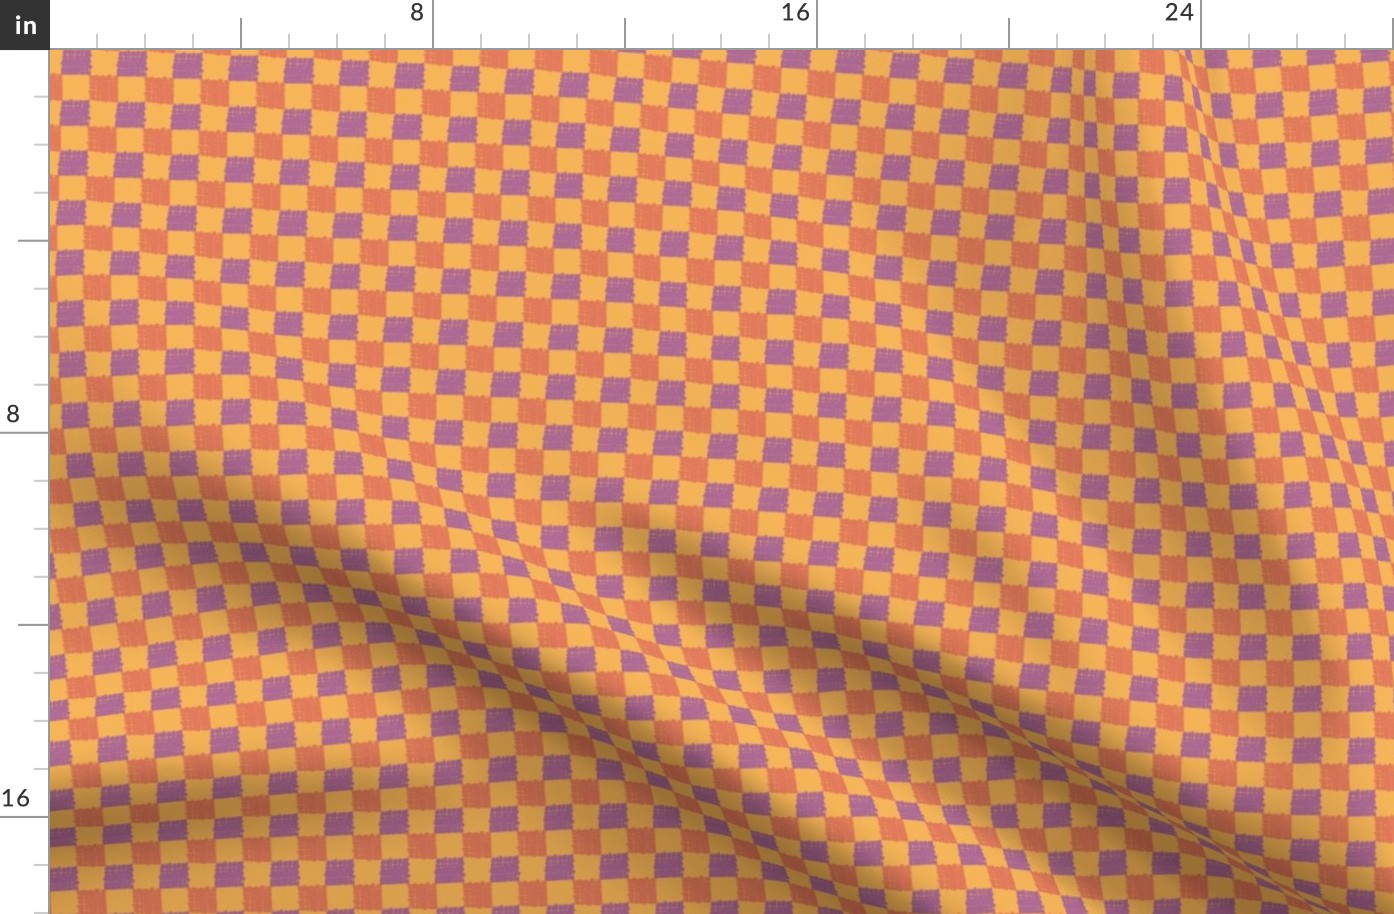 Lilac Purple, Orange, Yellow Gold Checkerboard